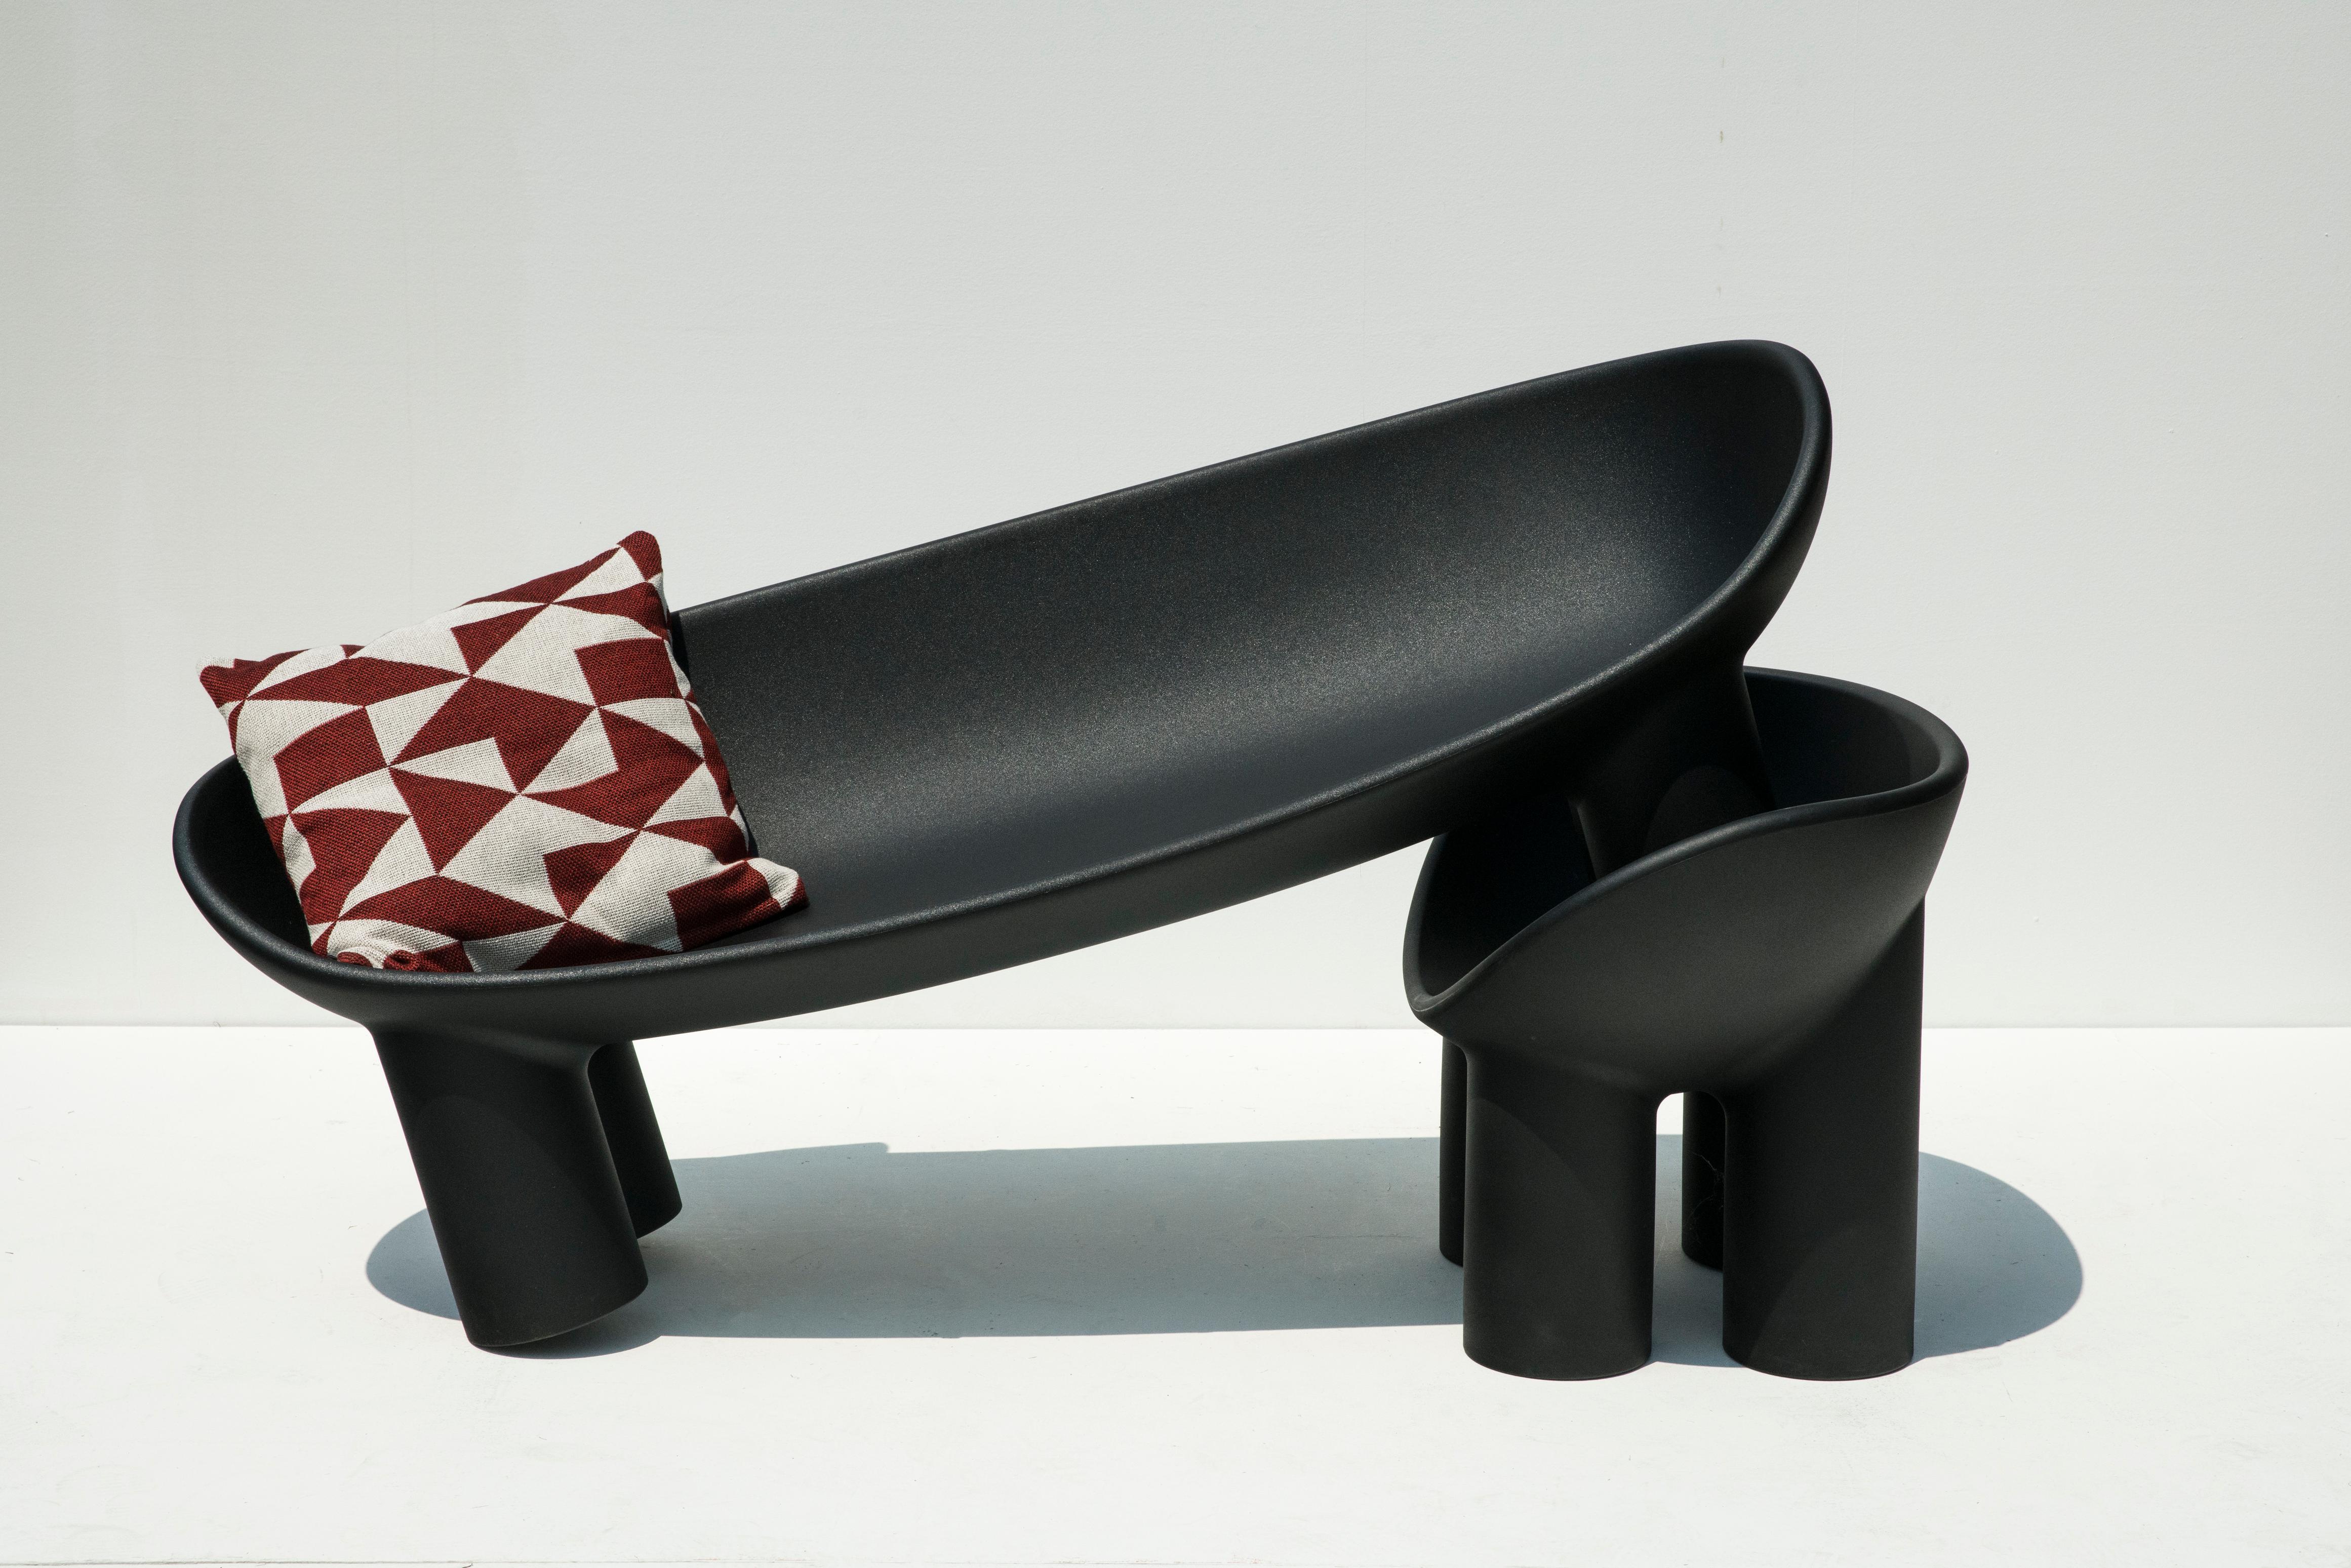 Die unverwechselbaren, beruhigend klobigen Linien von Faye Toogoods Roly-Poly-Möbelkollektion werden in ihrer neuen Collaboration mit Driade noch einladender. Die neueste Linie des italienischen Designhauses greift die runden, einladenden Formen der